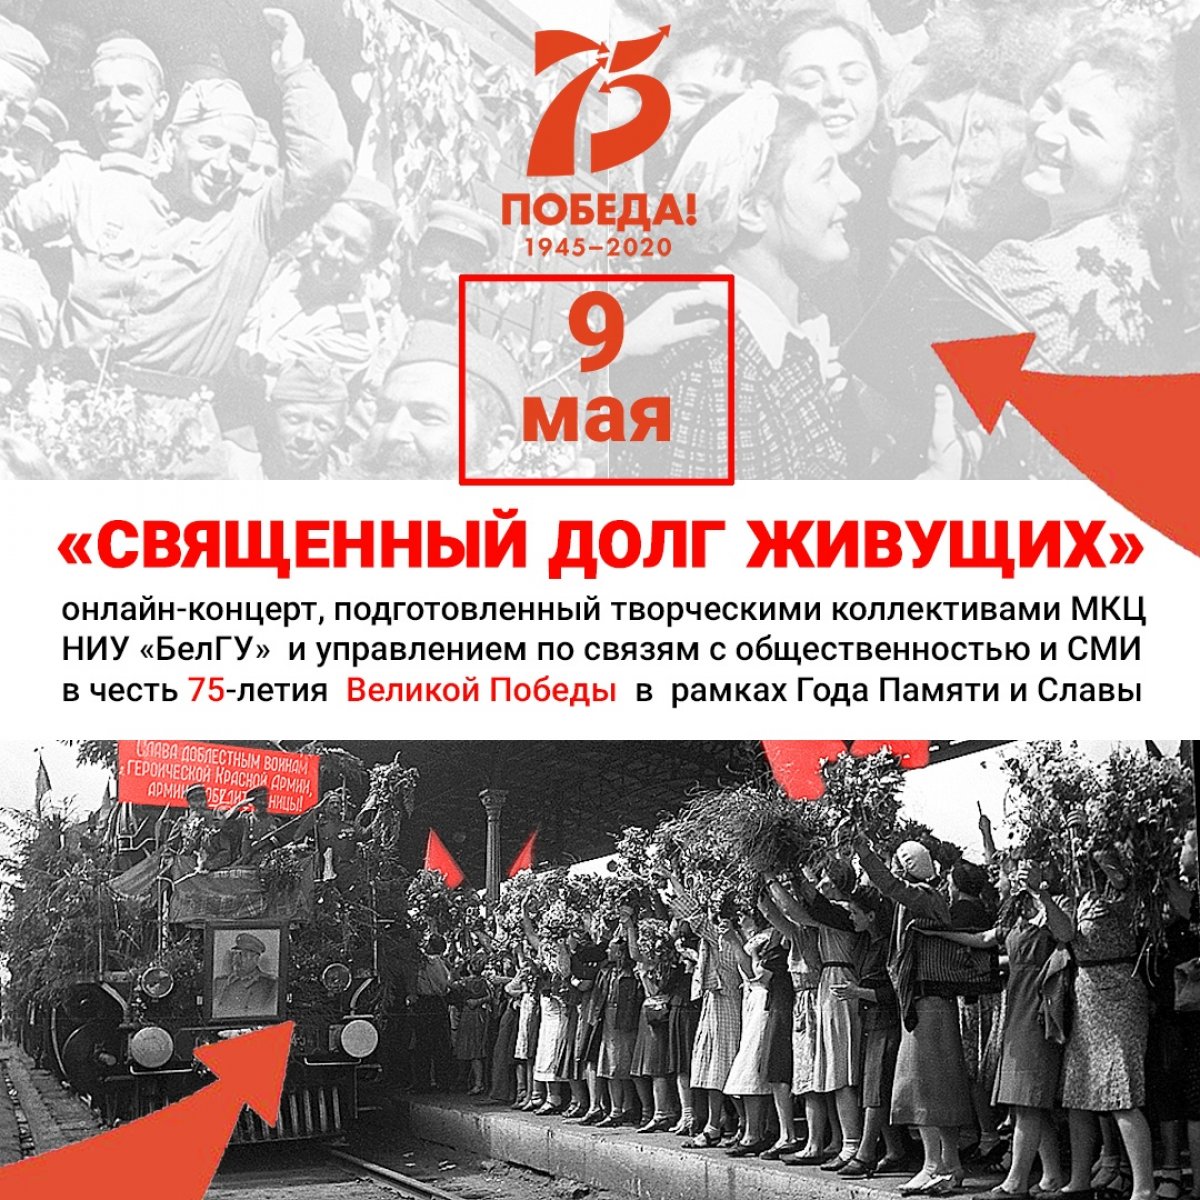 📌9 мая состоится онлайн-концерт «Священный долг живущих», посвященный 75-летию Победы в Великой Отечественной войне в рамках Года Памяти и Славы